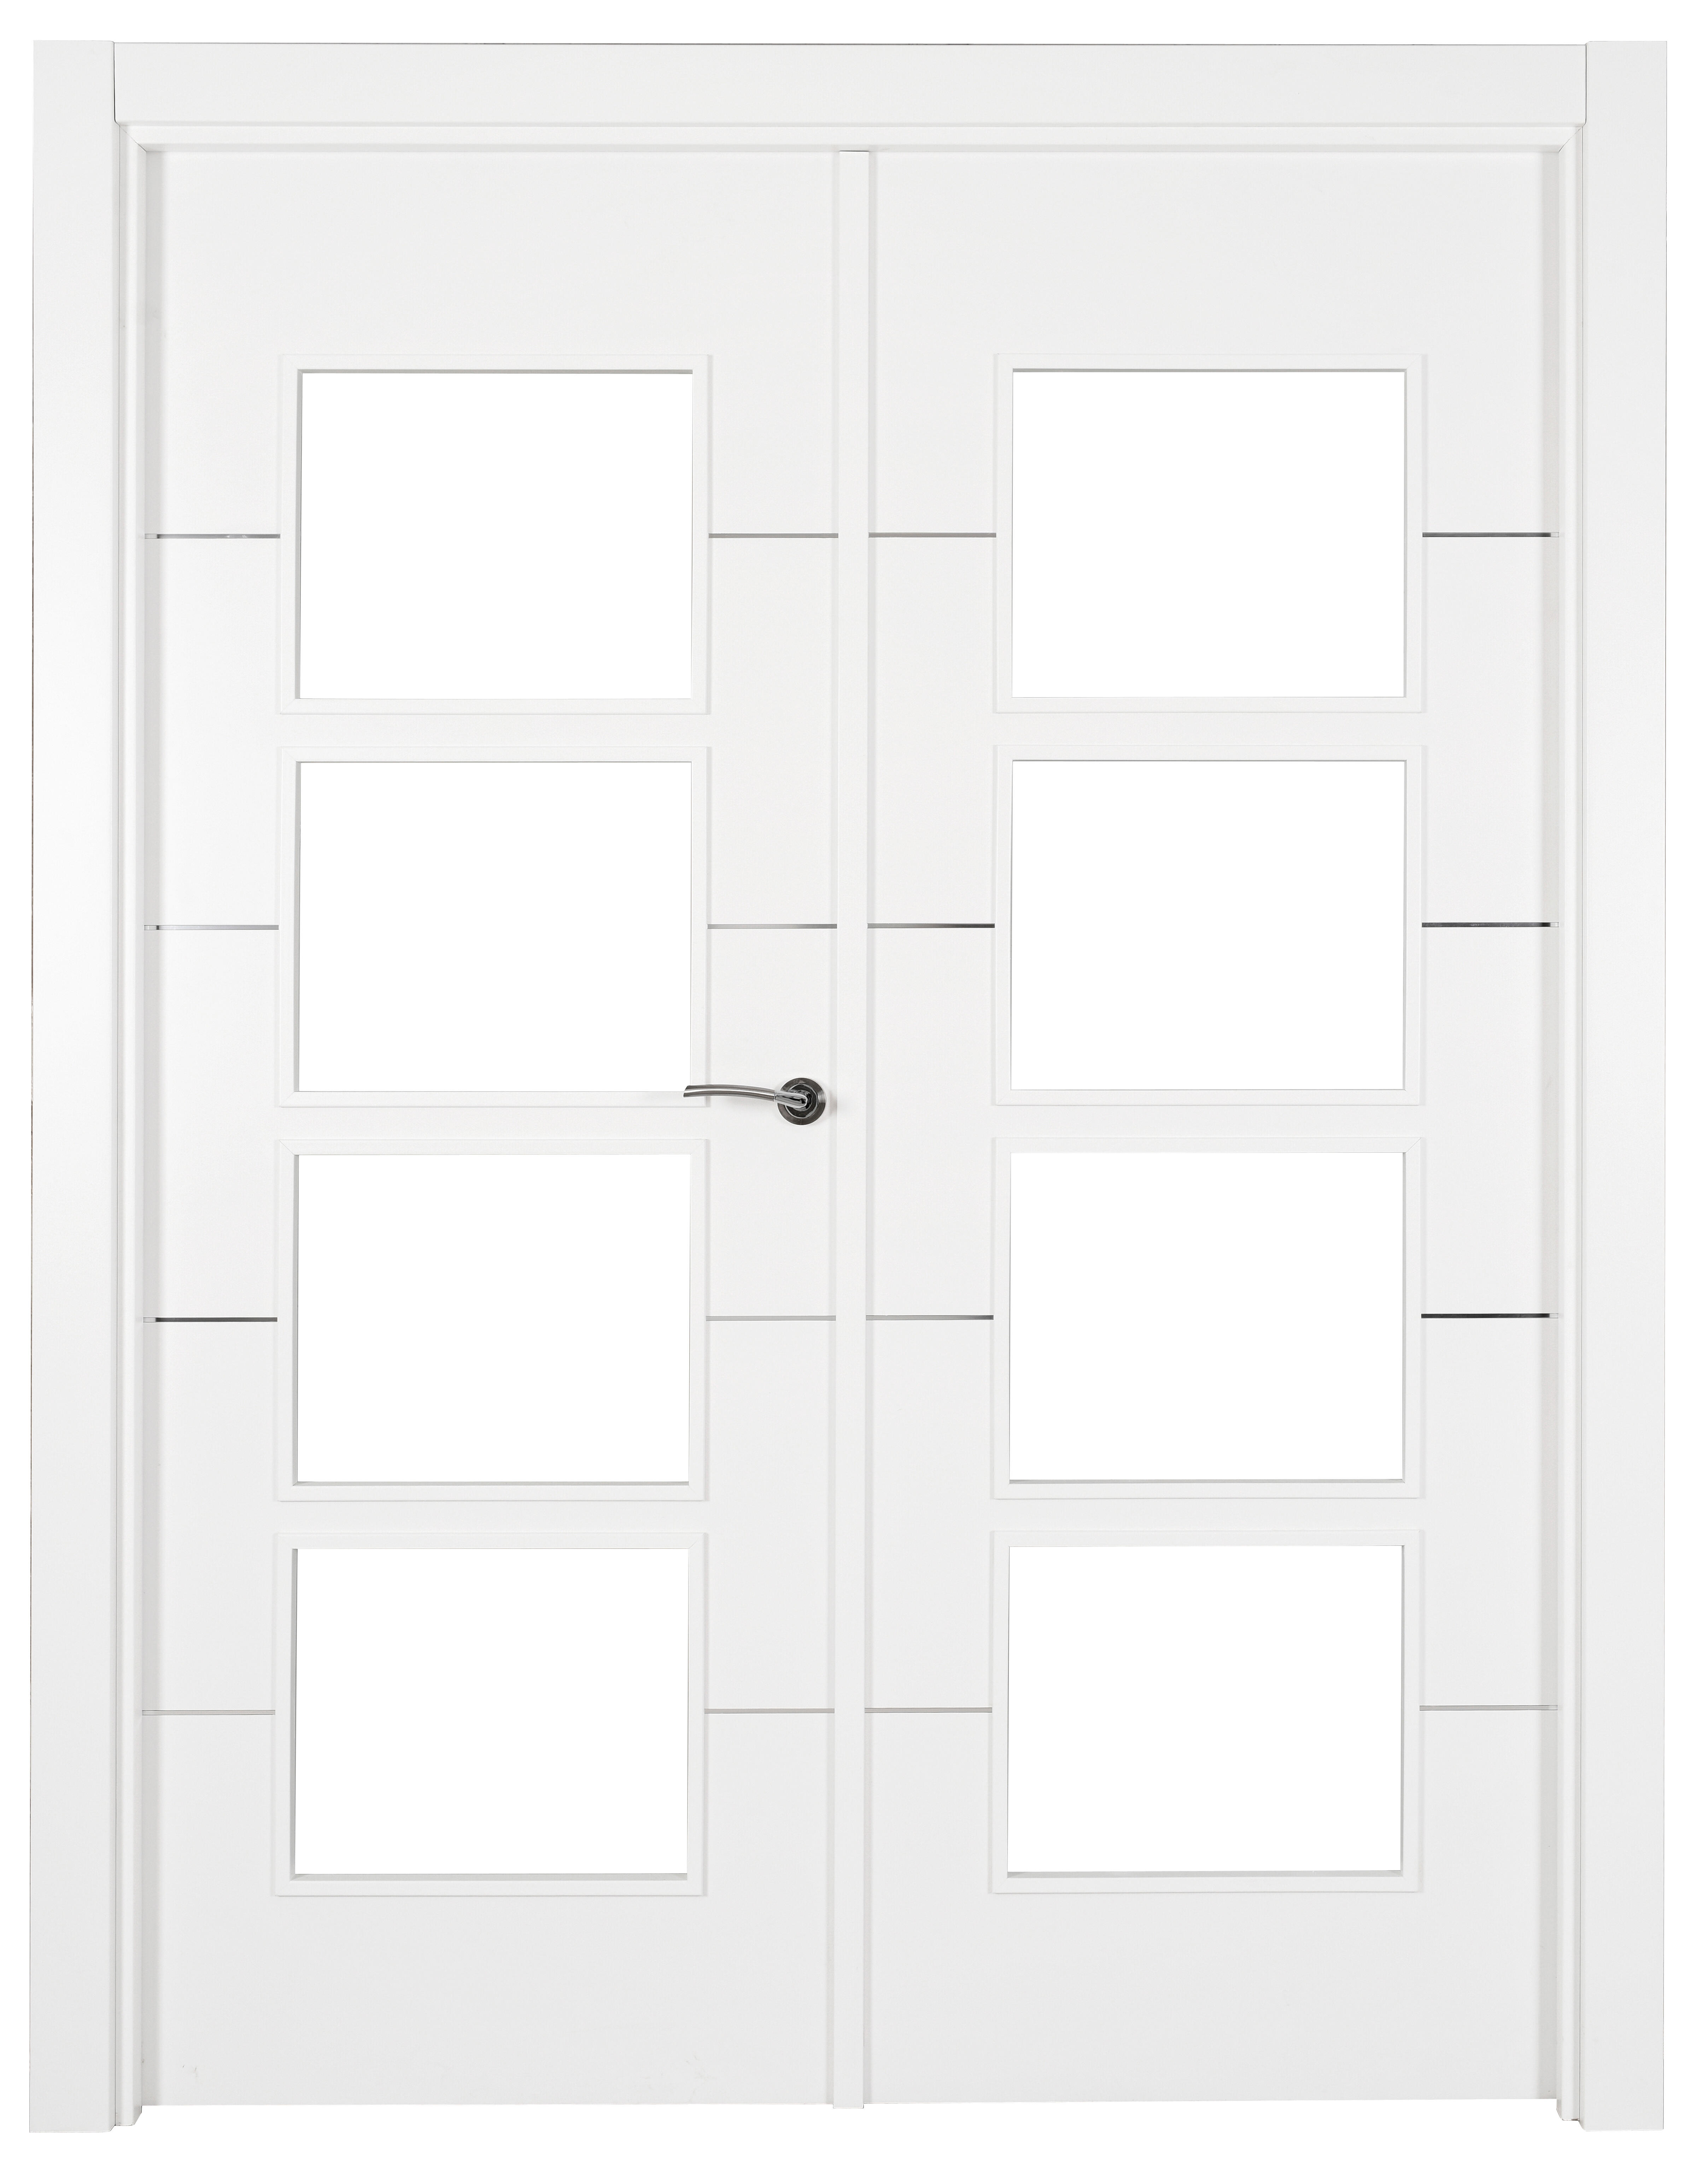 Puerta abatible paris blanca premium apertura izquierda de 9x145 cm